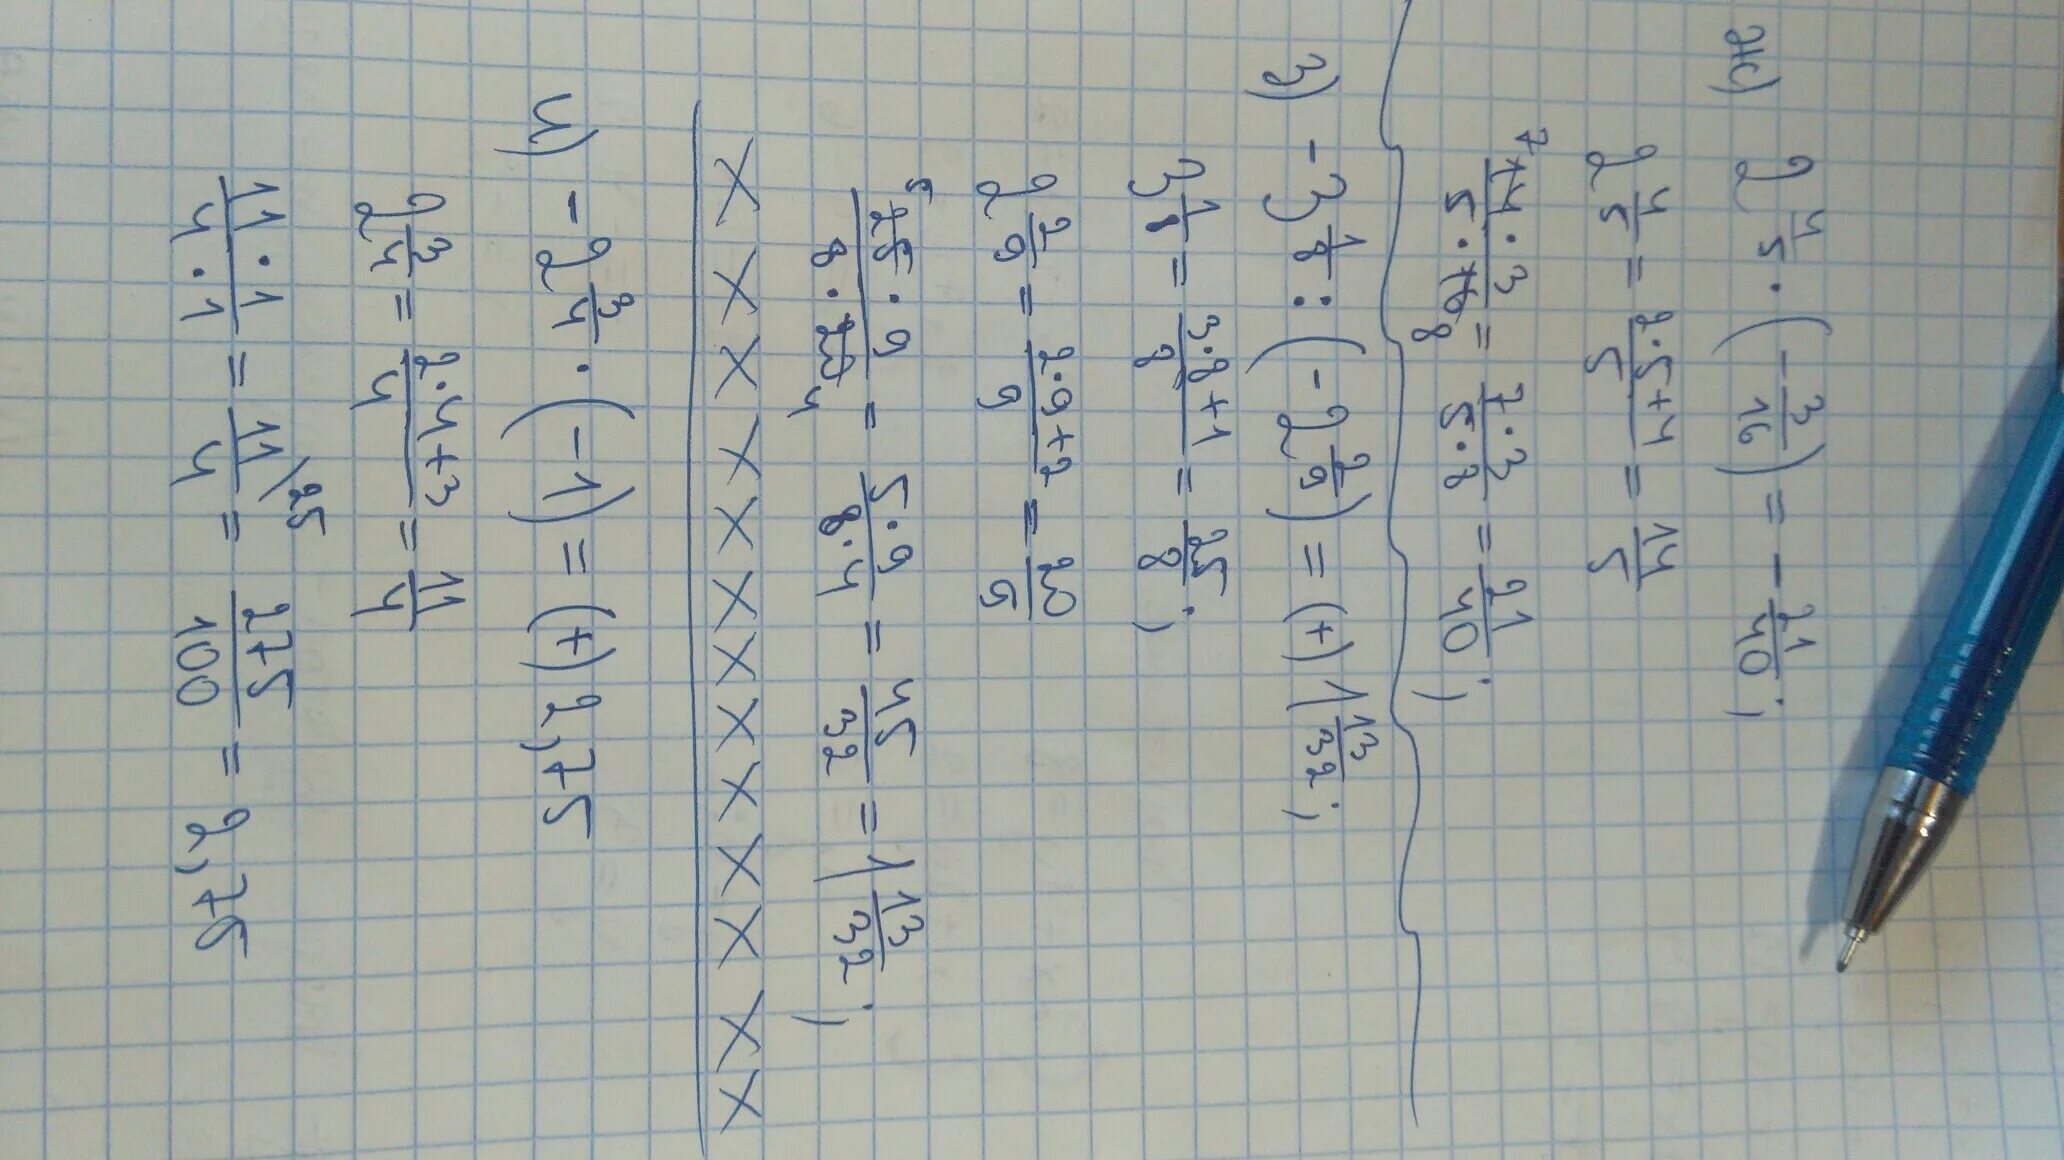 3 8 9 16 решение. 4 3/16 Минус 5/8. Четыре целых три шестнадцатых минус пять восьмых. Три целых пять шестнадцатых +1 четвёртое -2 целых 1/16 решение. У = (Ж- 2)5(2ж + i)4..